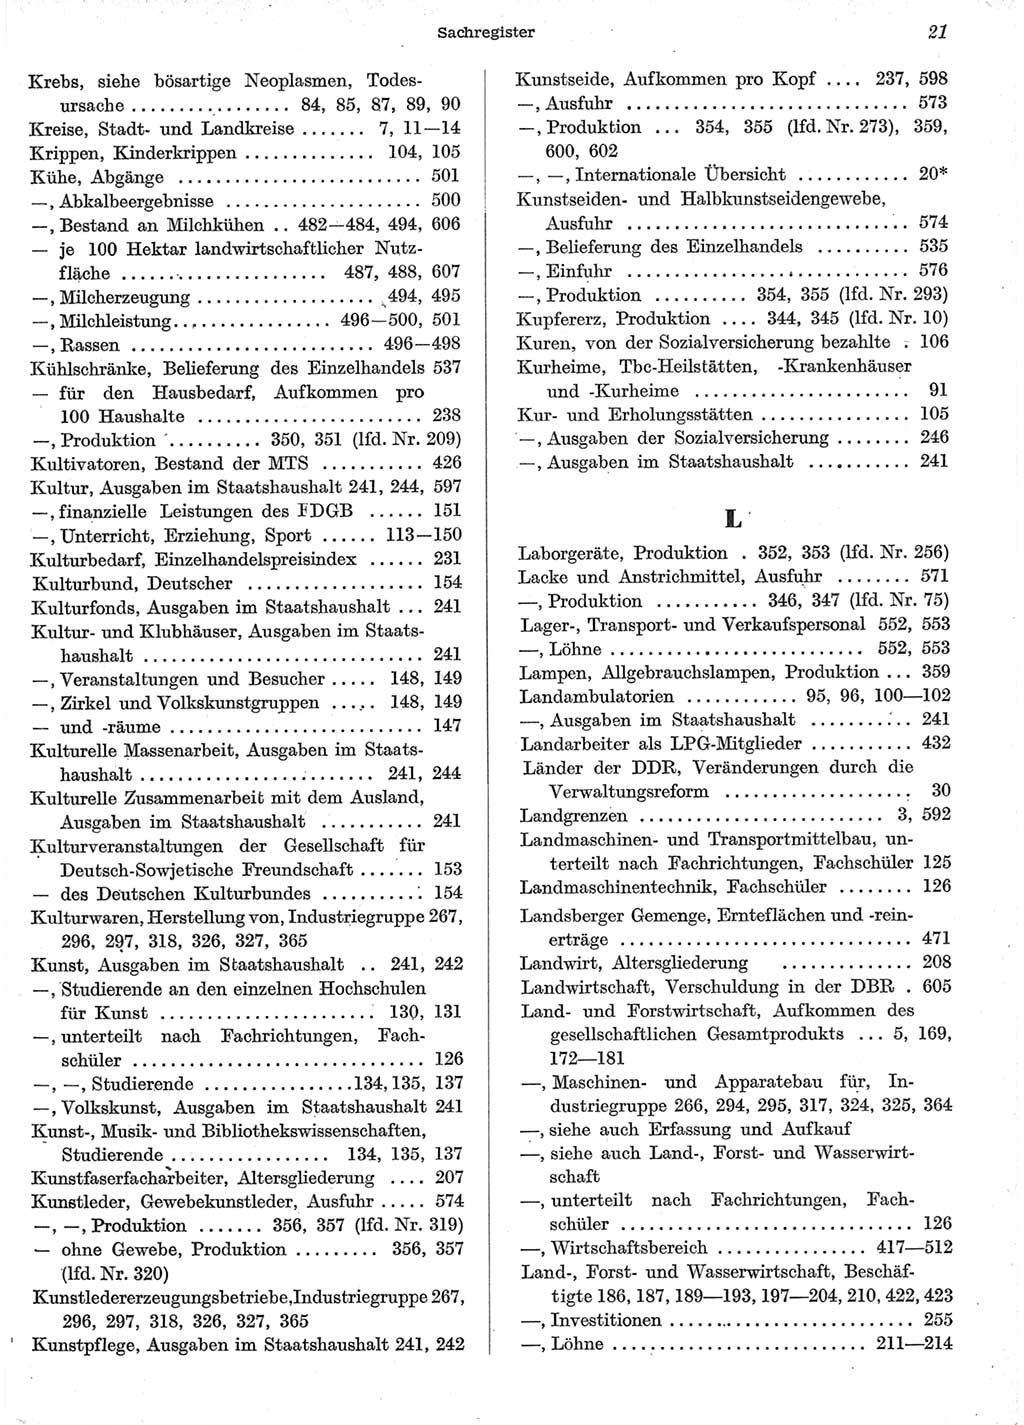 Statistisches Jahrbuch der Deutschen Demokratischen Republik (DDR) 1958, Seite 21 (Stat. Jb. DDR 1958, S. 21)